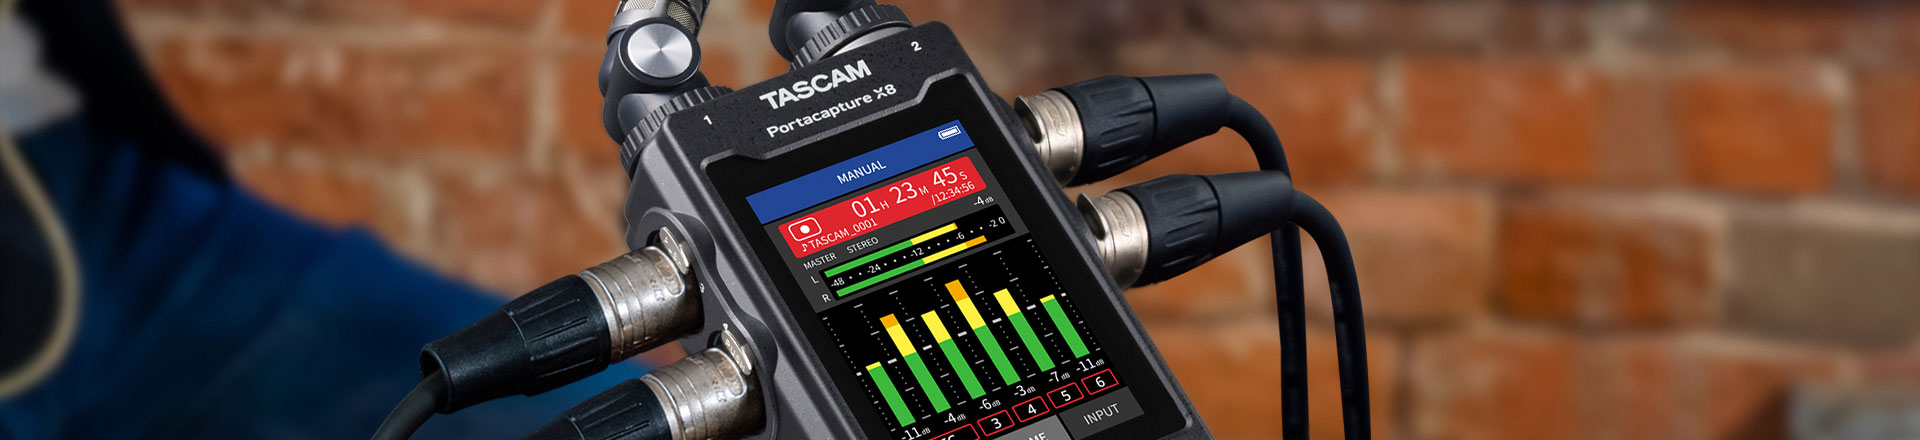 Tascam Portacapture X8: Poręczny rejestrator audio z wieloma możliwościami